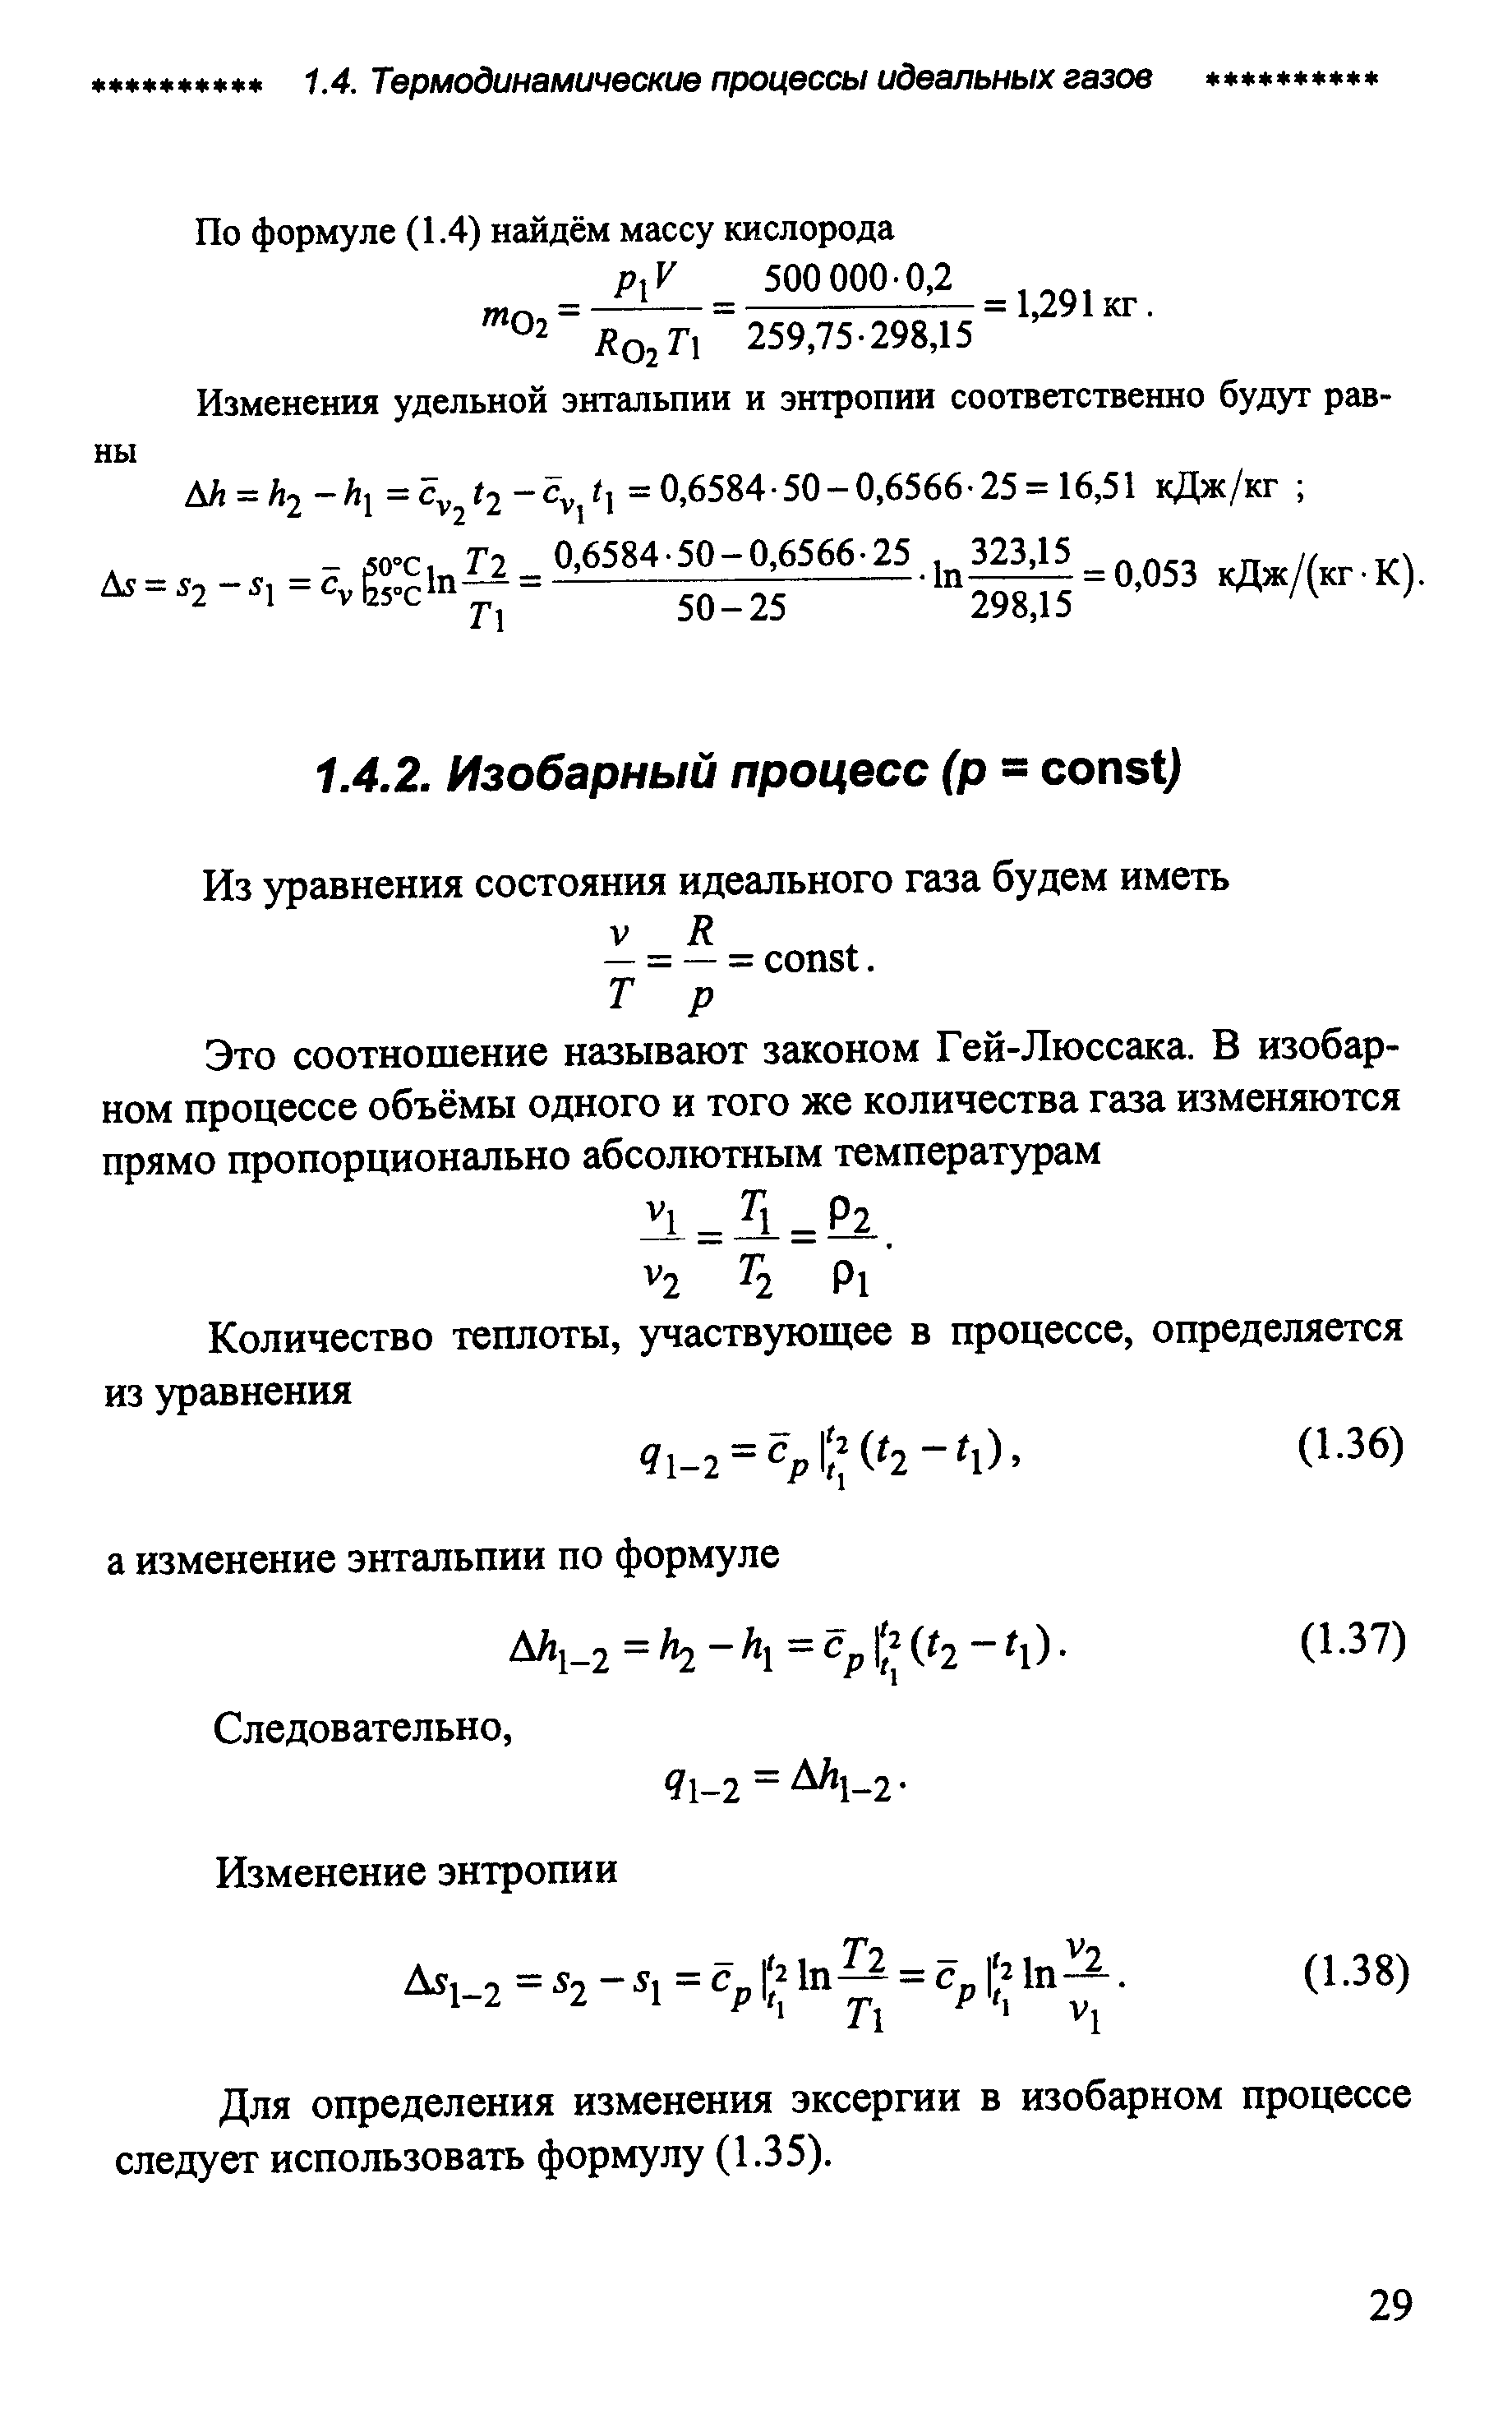 Для определения изменения эксергии в изобарном процессе следует использовать формулу (1.35).
